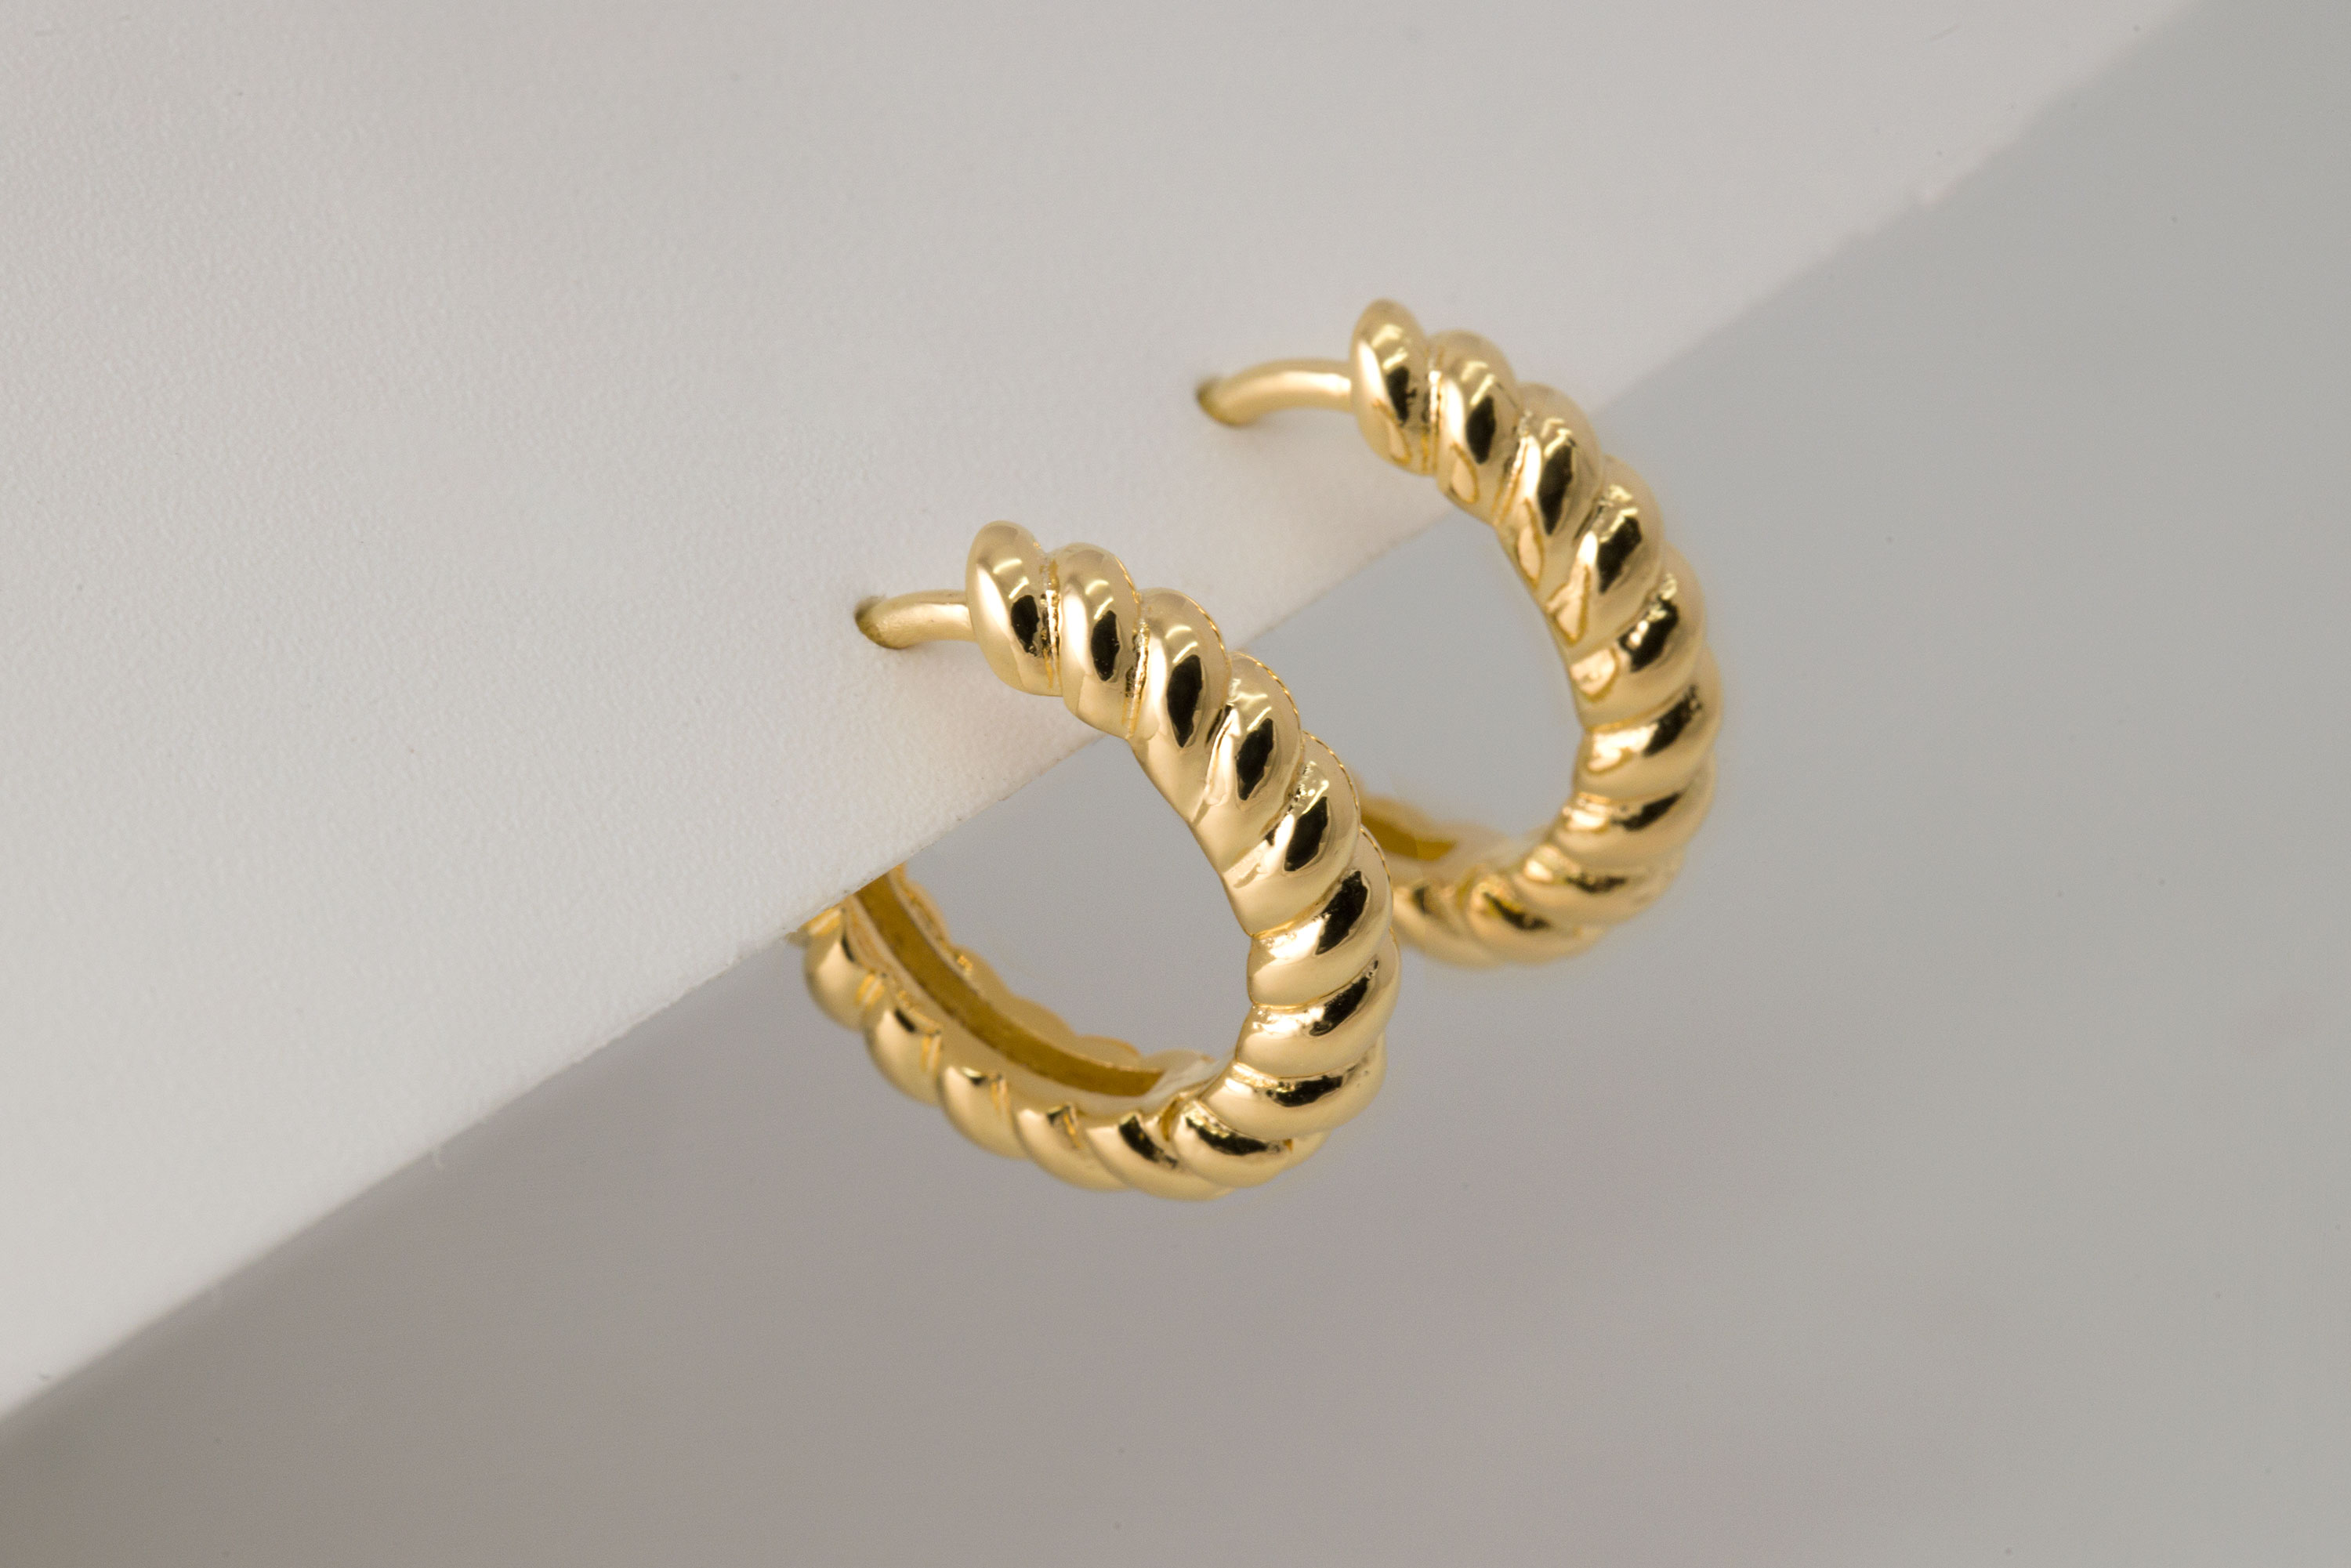 [D11-G6] Rope twisted hoop earrings, Brass, Nickel free, Handmade jewelry, Hoop earrings, Dainty earrings, Simple earrings